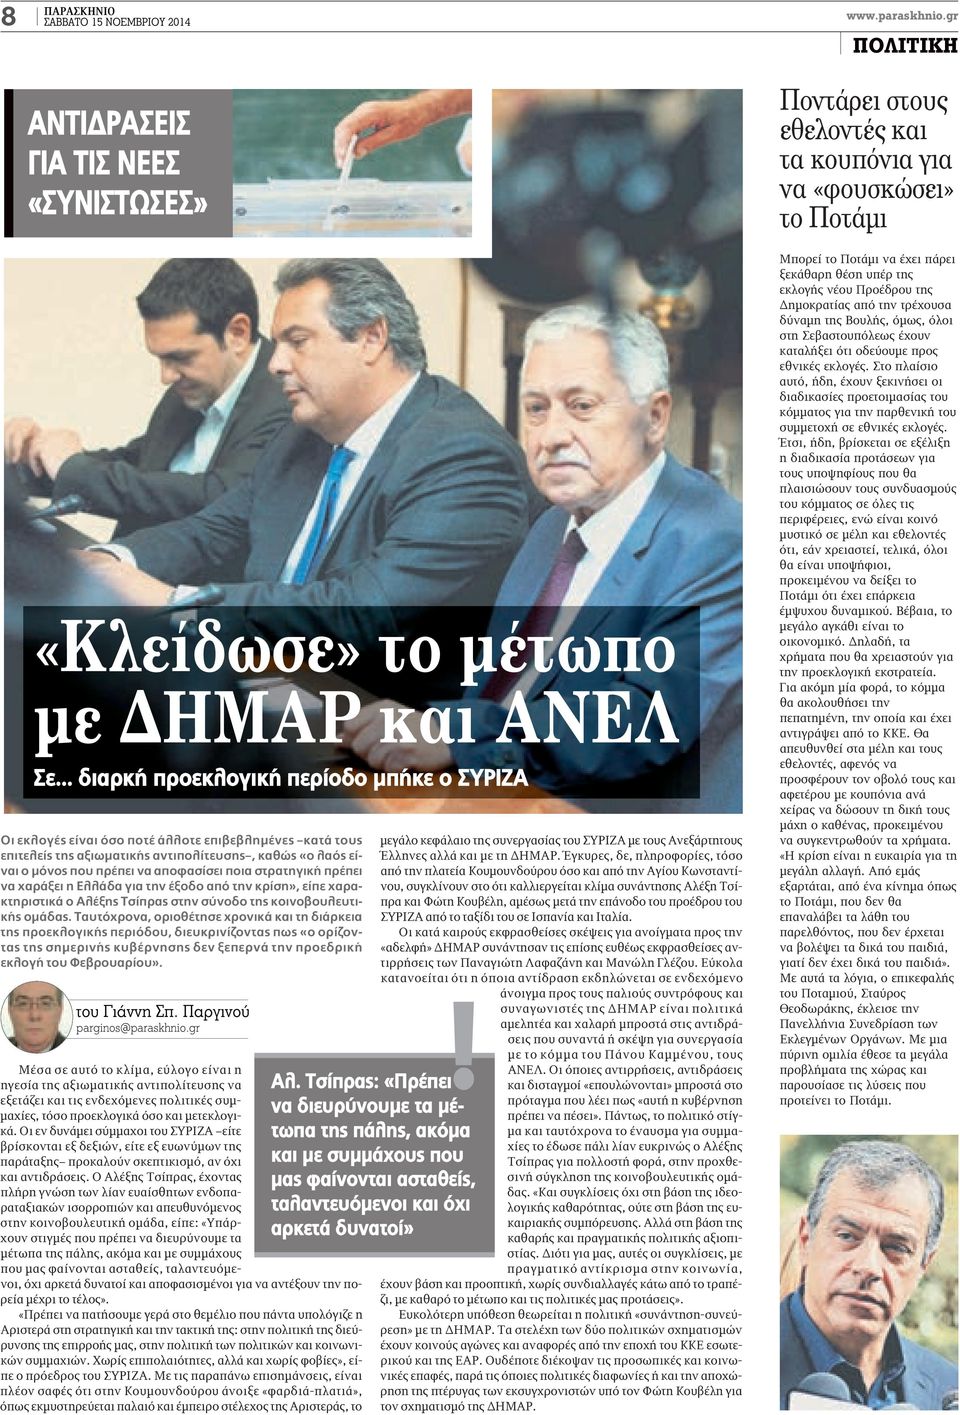 ποια στρατηγική πρέπει να χαράξει η ελλάδα για την έξοδο από την κρίση», είπε χαρακτηριστικά ο Αλέξης Τσίπρας στην σύνοδο της κοινοβουλευτικής ομάδας.